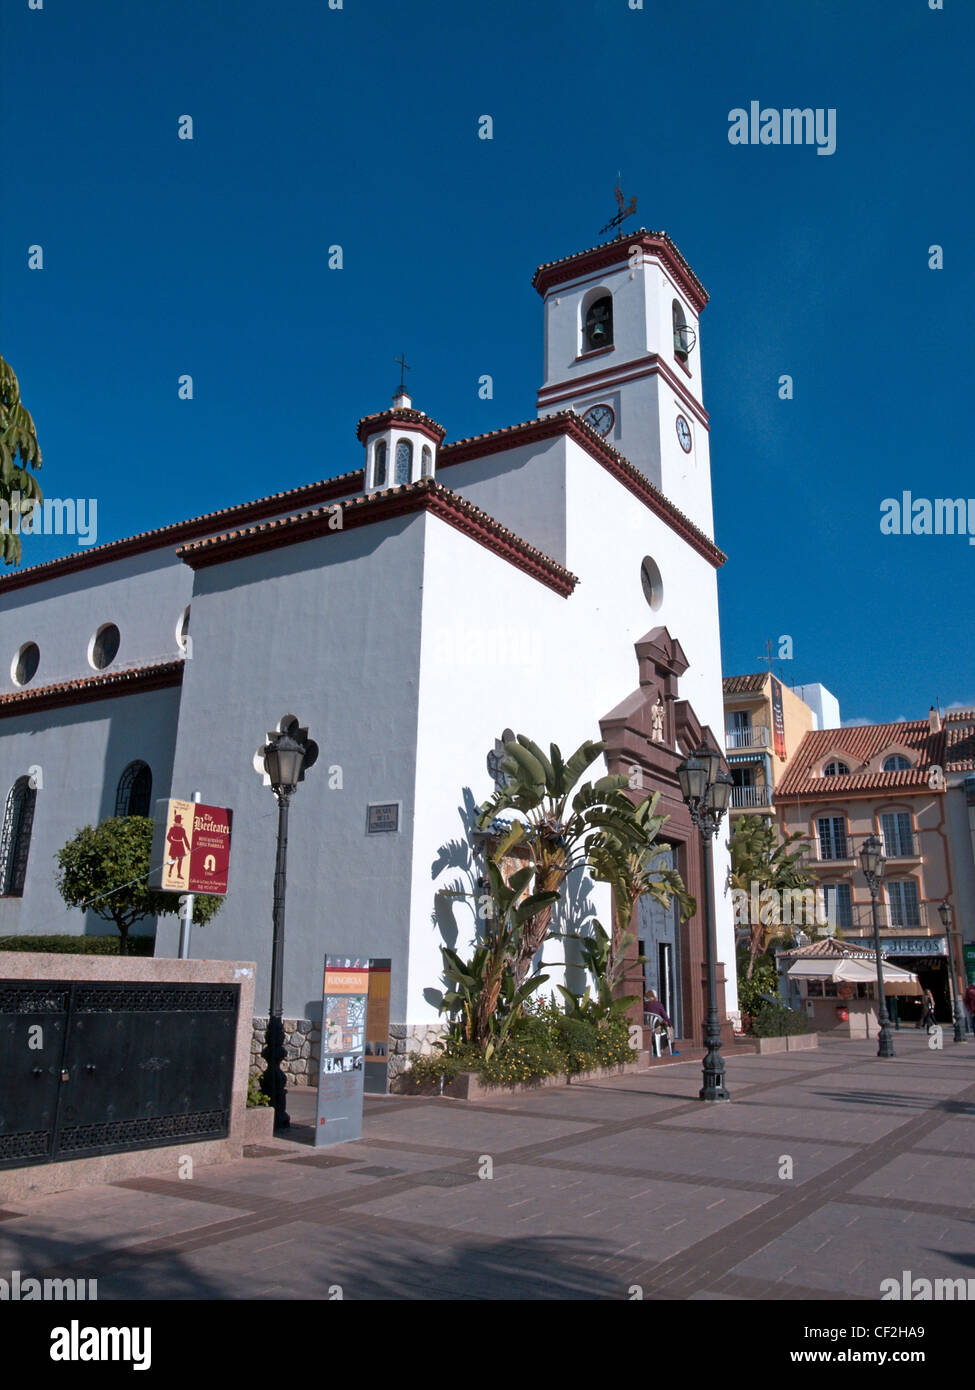 Church (Iglesia Nuestra Senora del Rosario) in the Plaza de la Constitucion, Fuengirola, Costa del Sol, Spain, Europe. Stock Photo